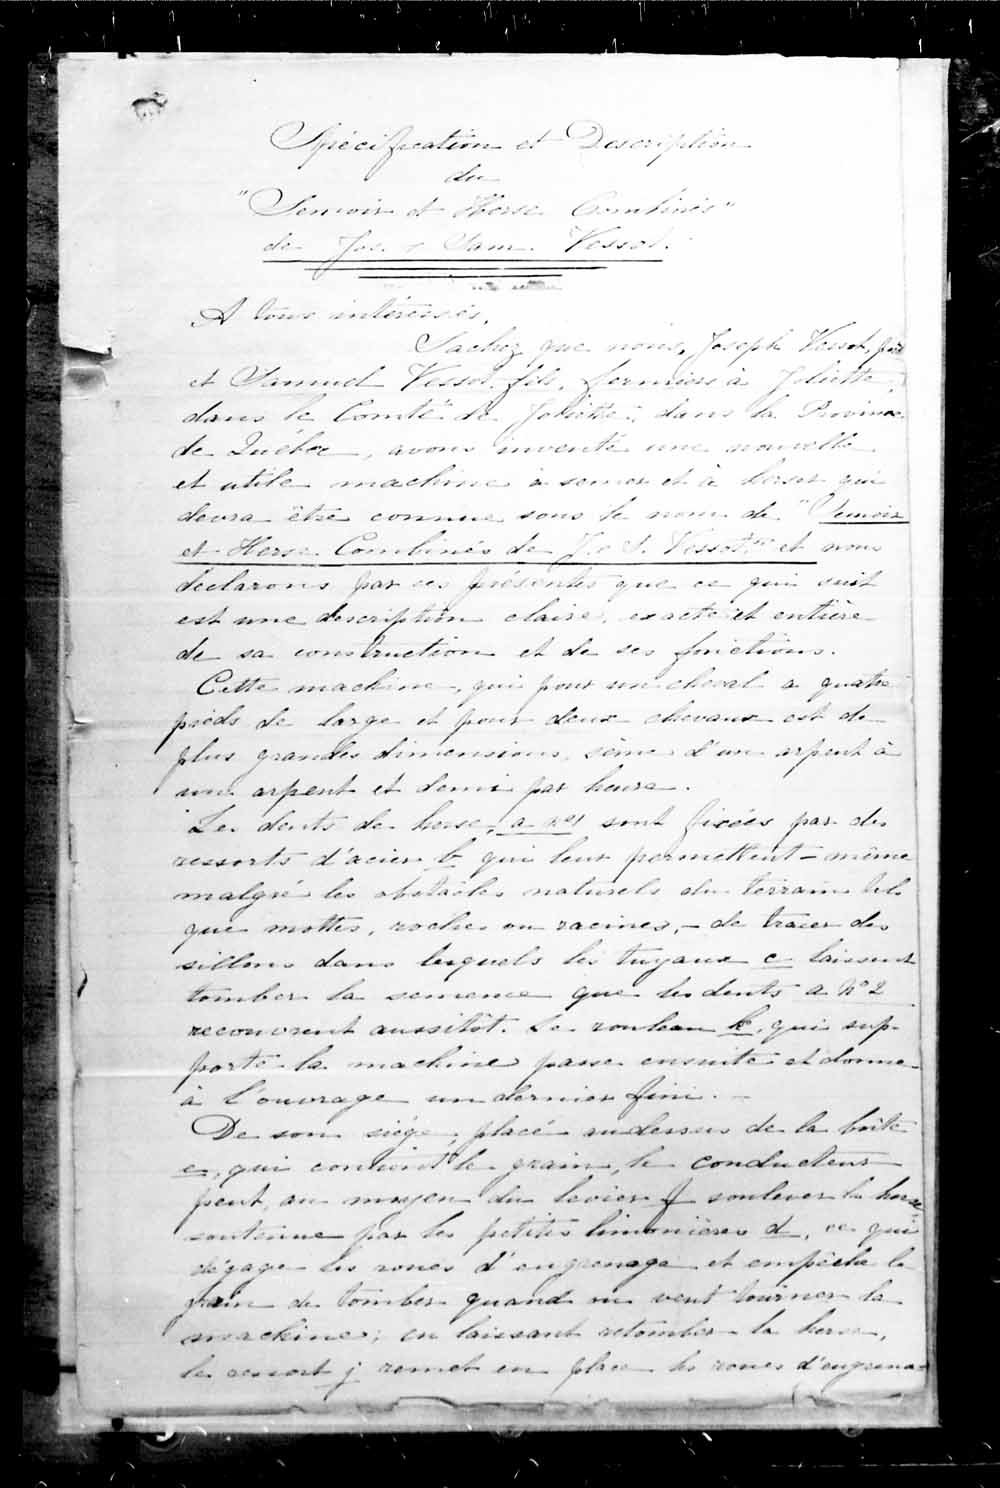 Page numérisé de Brevets canadiens, 1869-1919 pour l'image numéro: e003227432